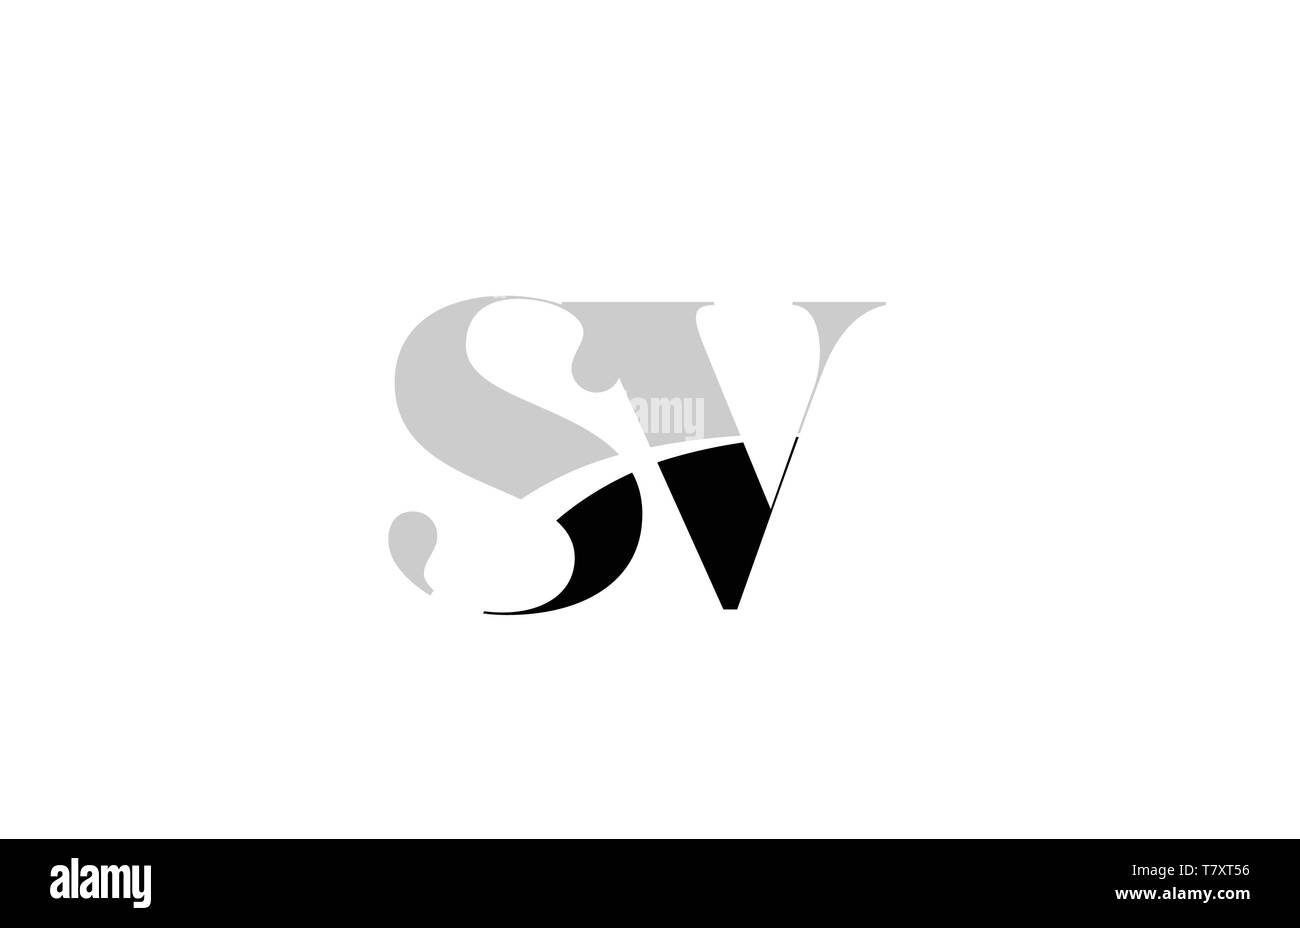 Schwarze und weiße Buchstaben sv s v logo Icon Design für eine Firma oder Geschäft Stock Vektor